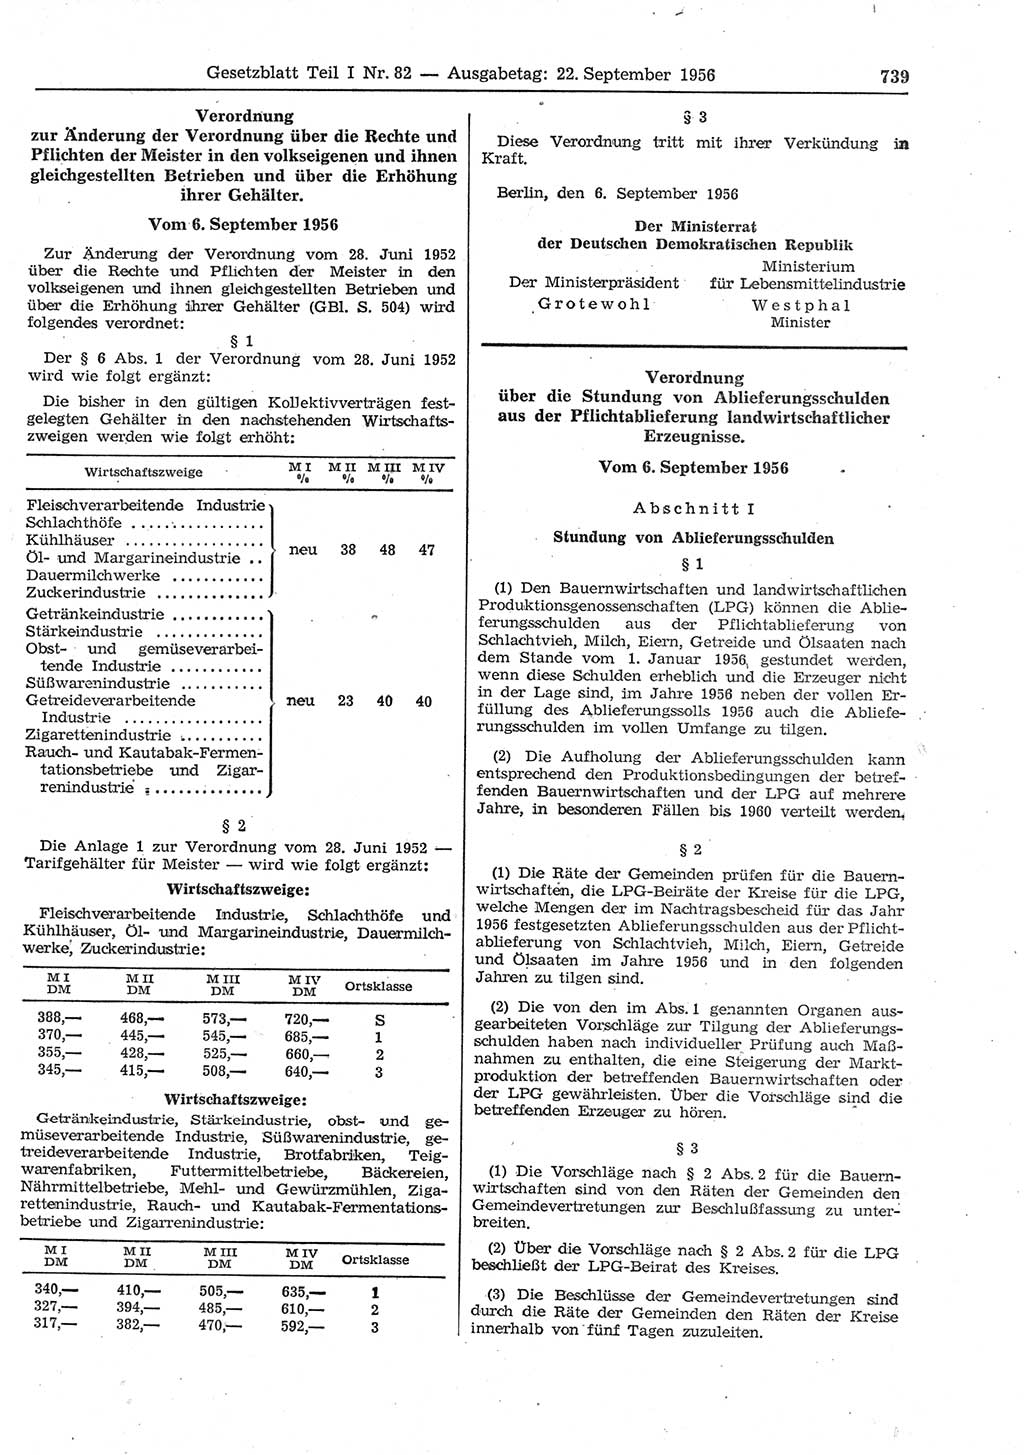 Gesetzblatt (GBl.) der Deutschen Demokratischen Republik (DDR) Teil Ⅰ 1956, Seite 739 (GBl. DDR Ⅰ 1956, S. 739)